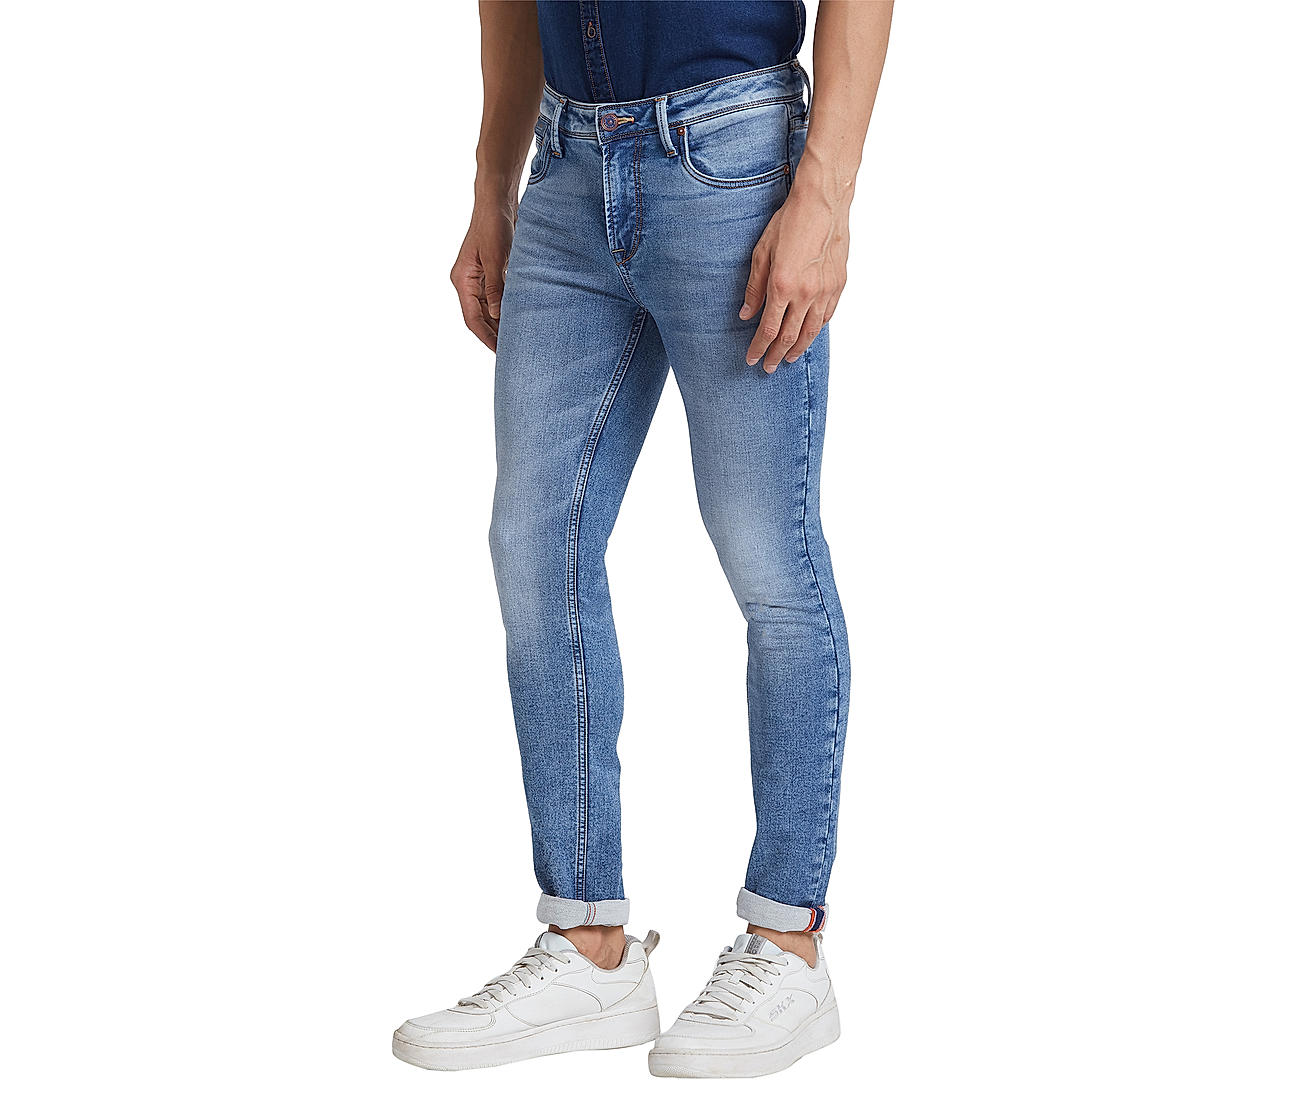 Buy Slim Fit Light Blue Solid Jeans for Men Online at Killer | 519872